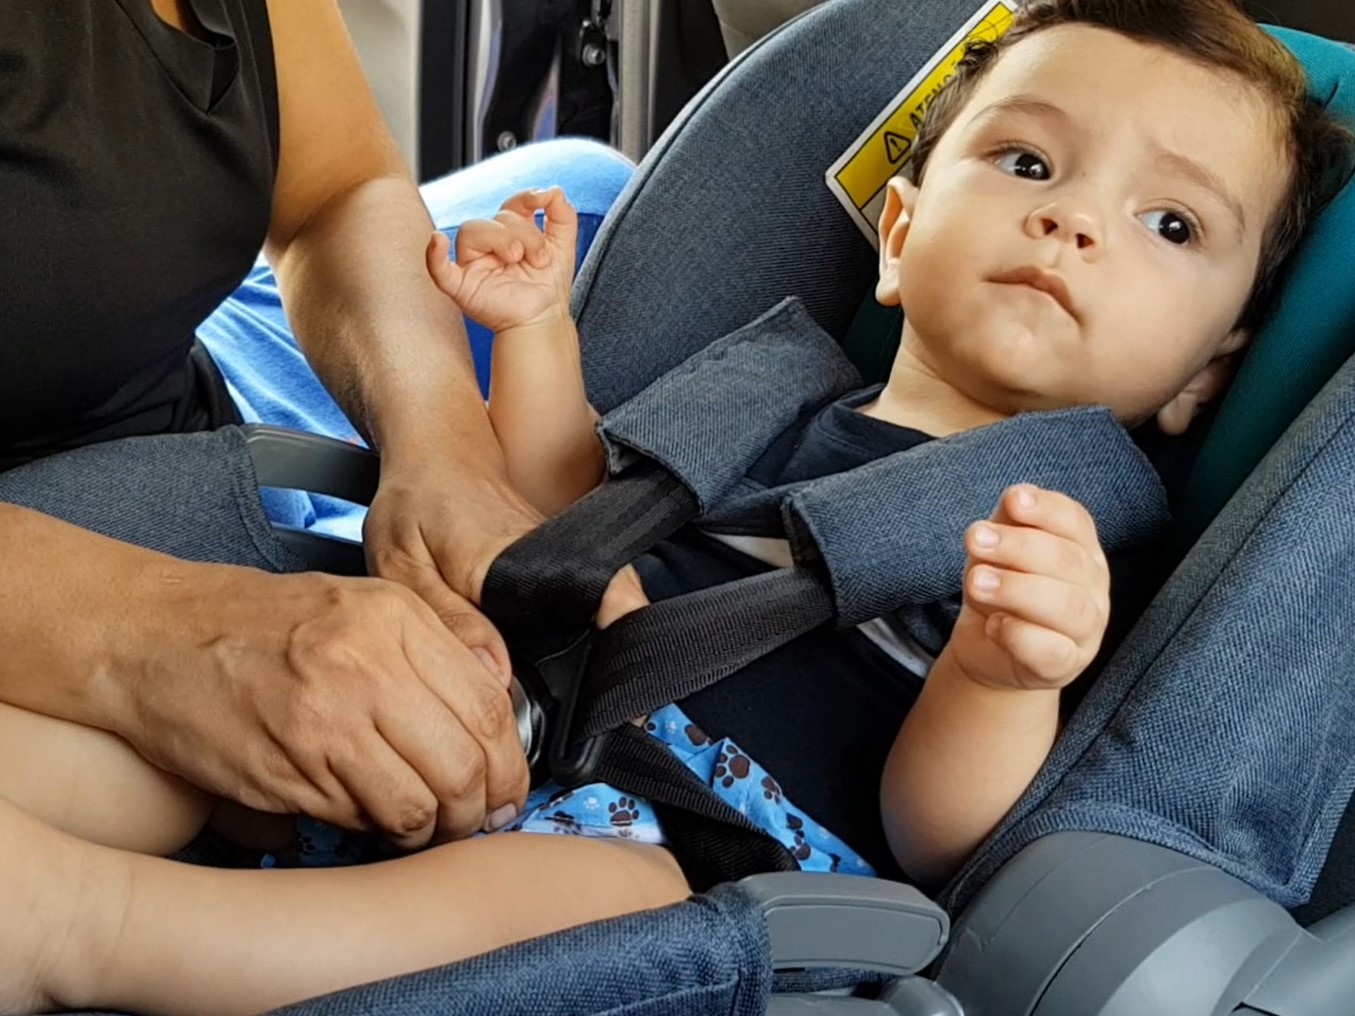 Semana da Criança: em Campinas, pequenos têm pouca segurança em carros